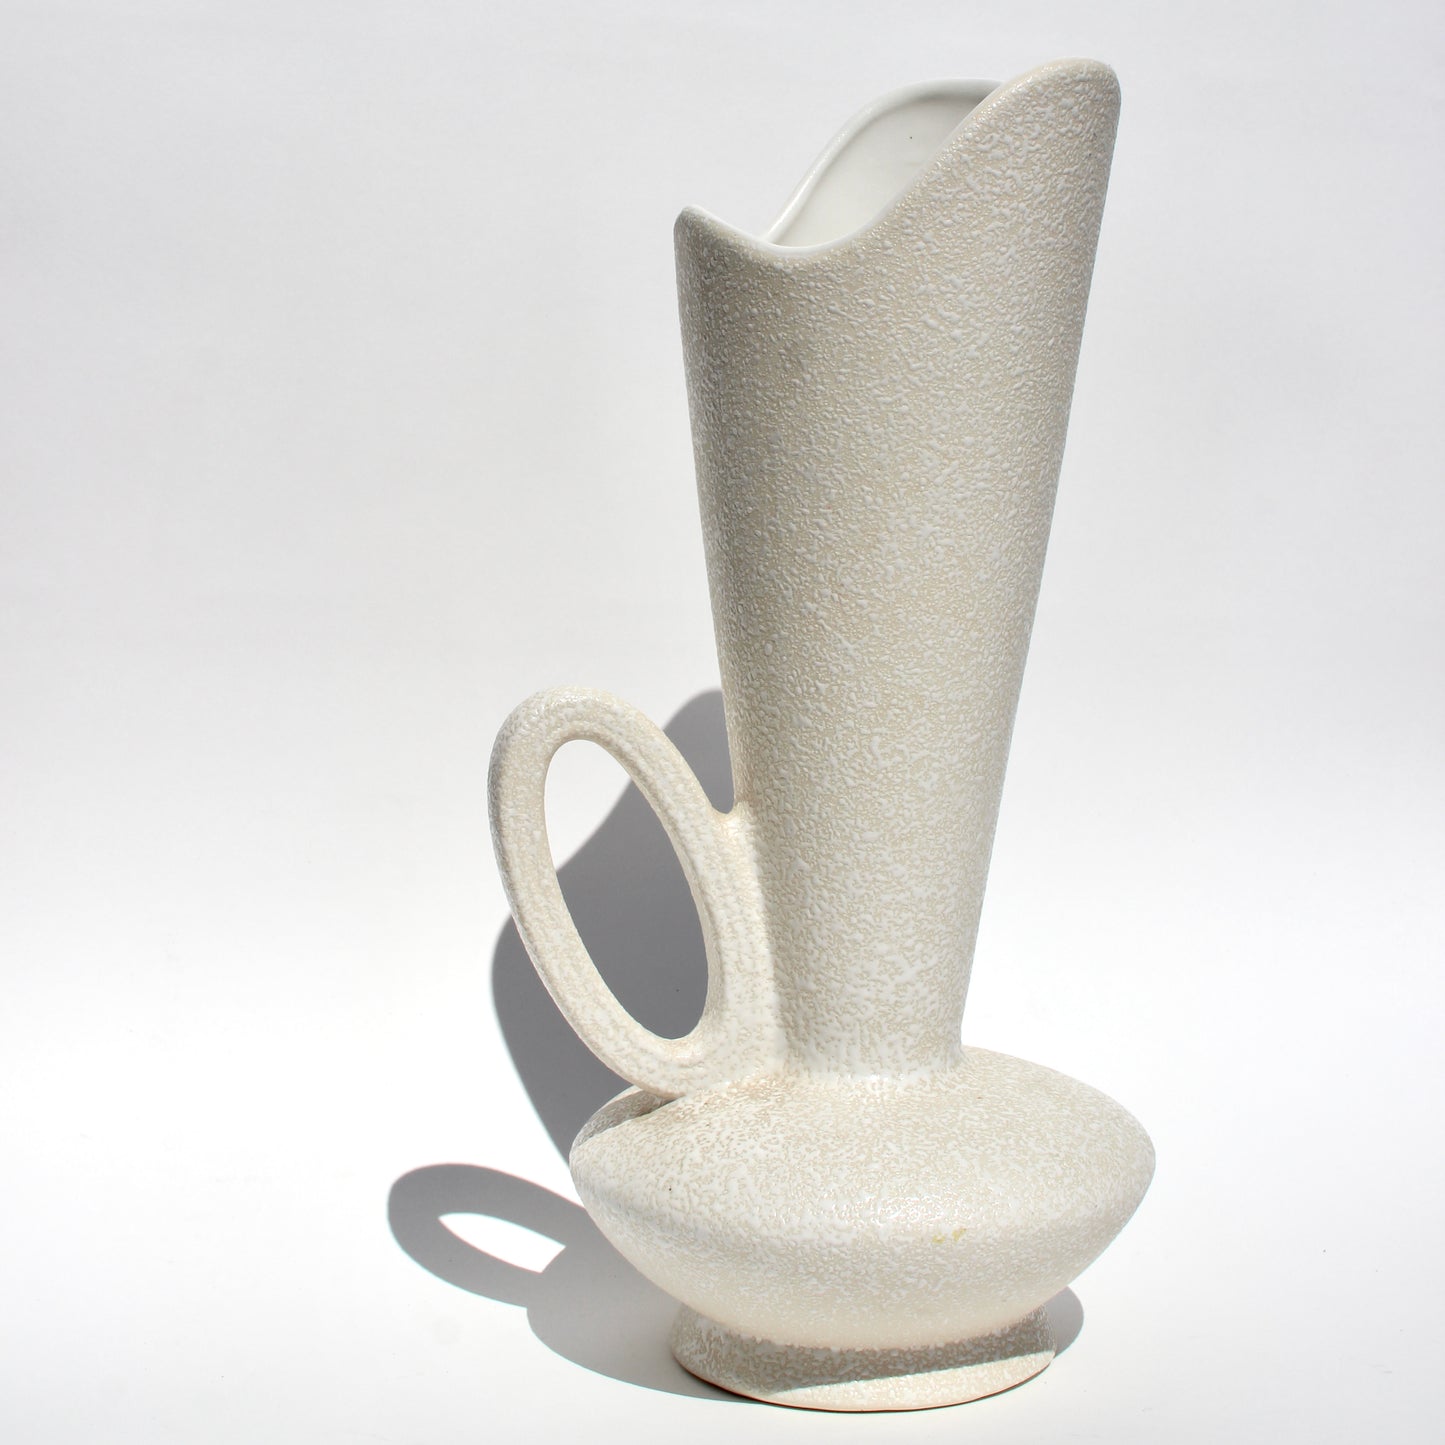 sculptural pebble vase